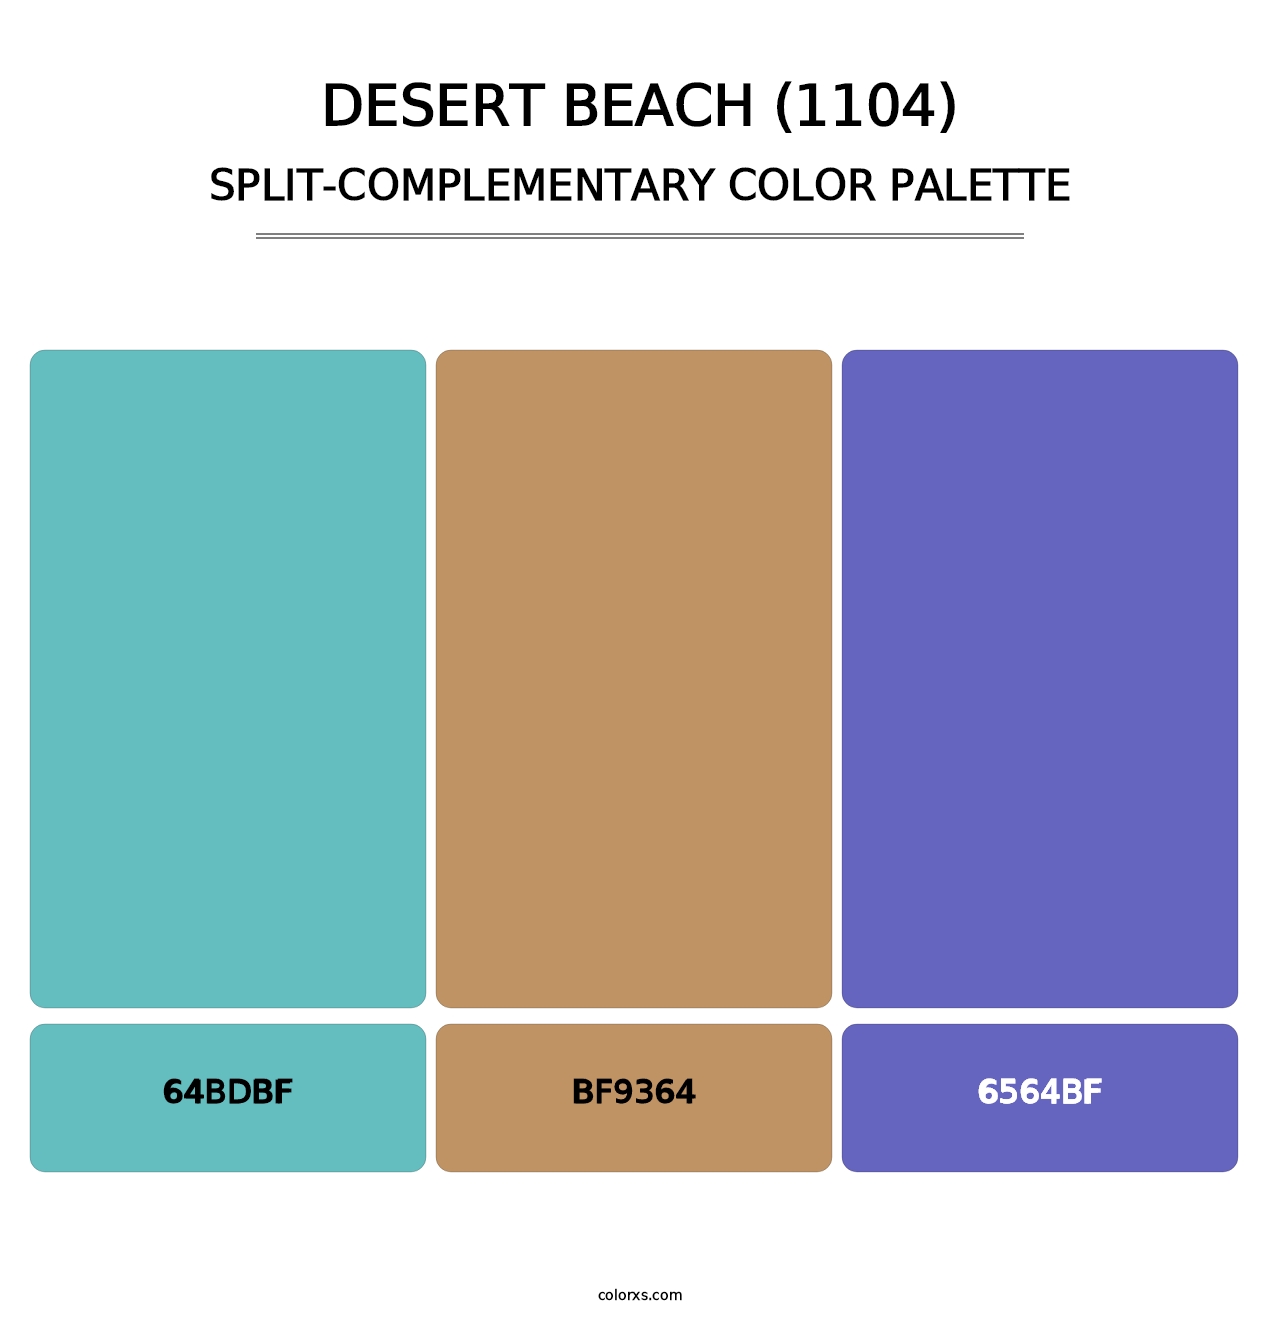 Desert Beach (1104) - Split-Complementary Color Palette